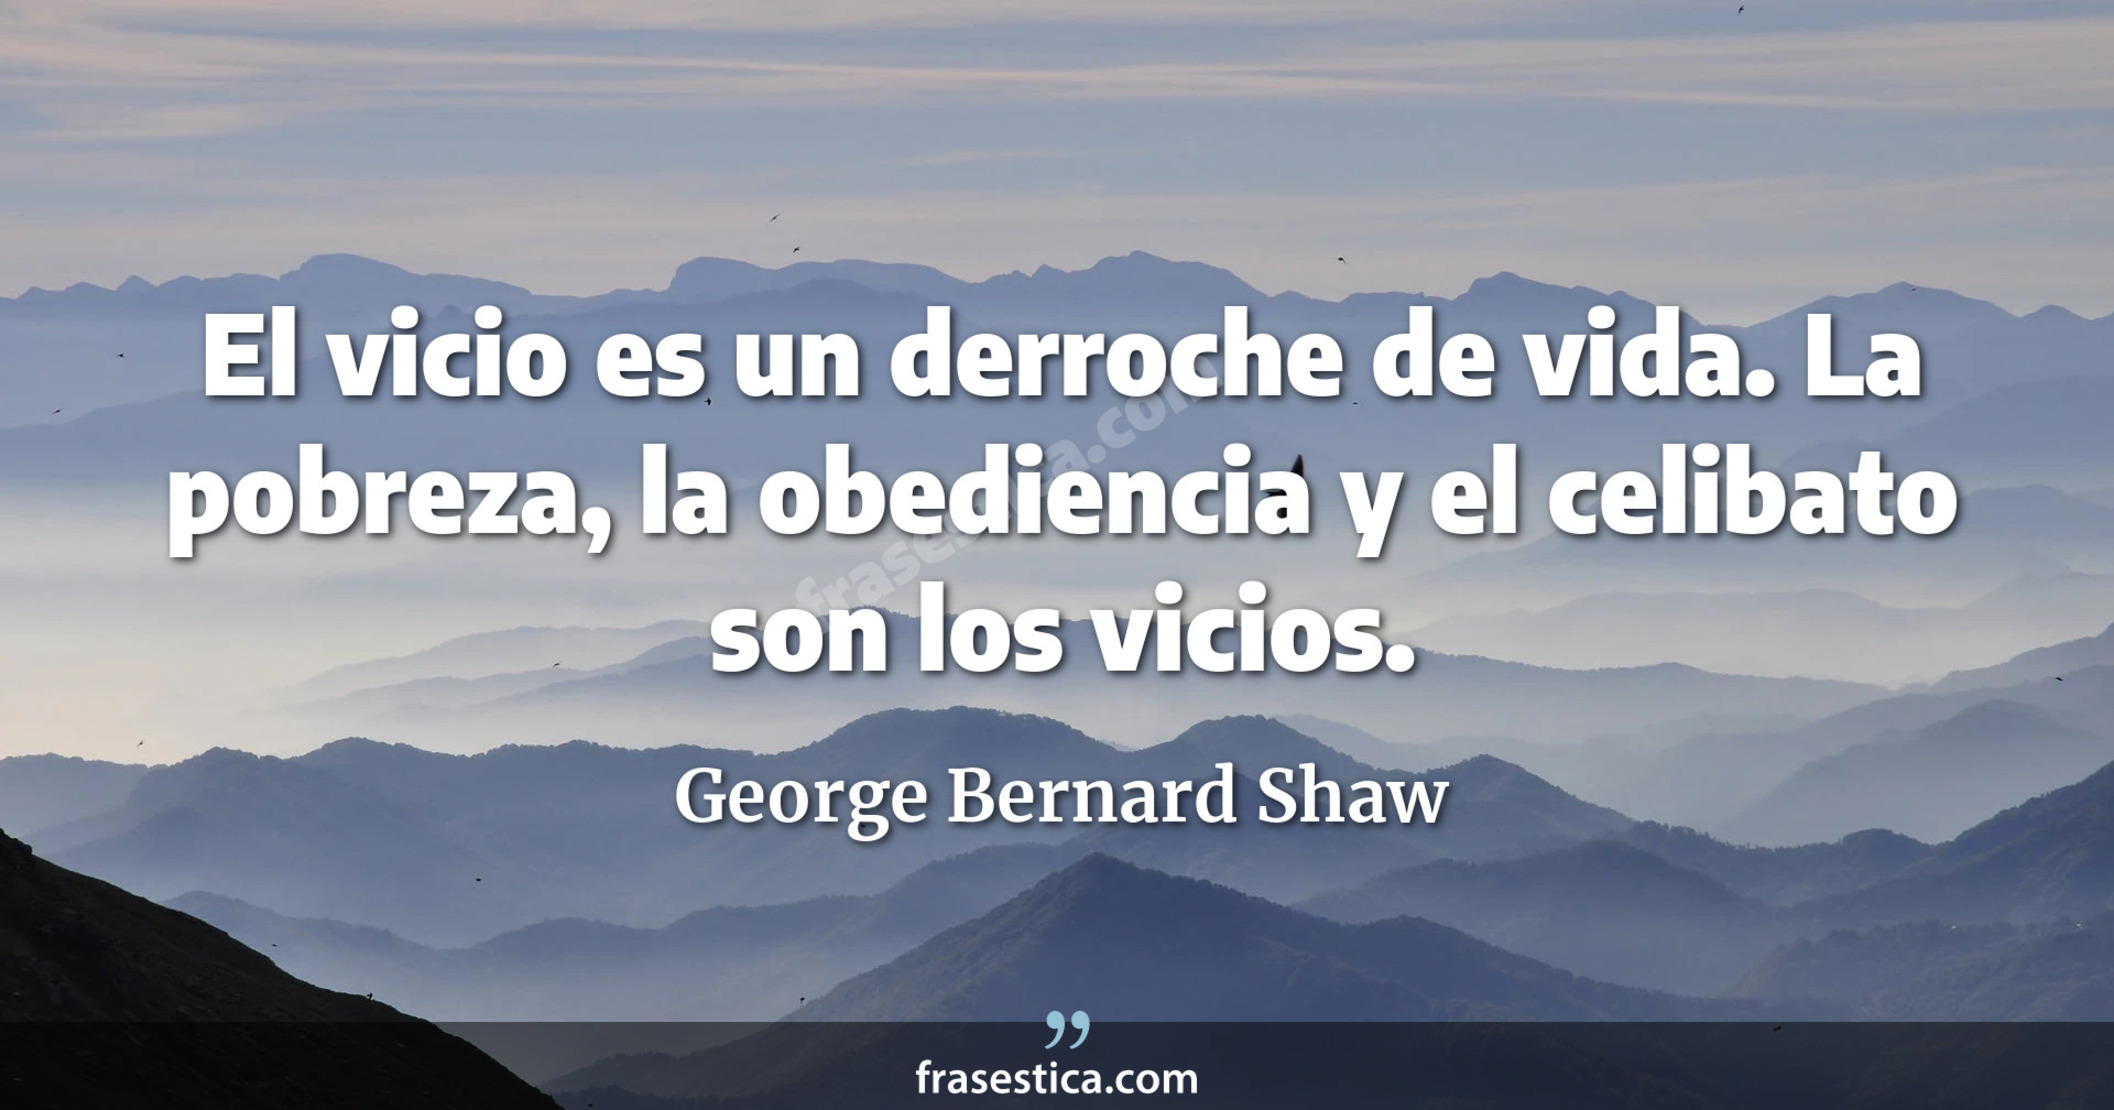 El vicio es un derroche de vida. La pobreza, la obediencia y el celibato son los vicios. - George Bernard Shaw